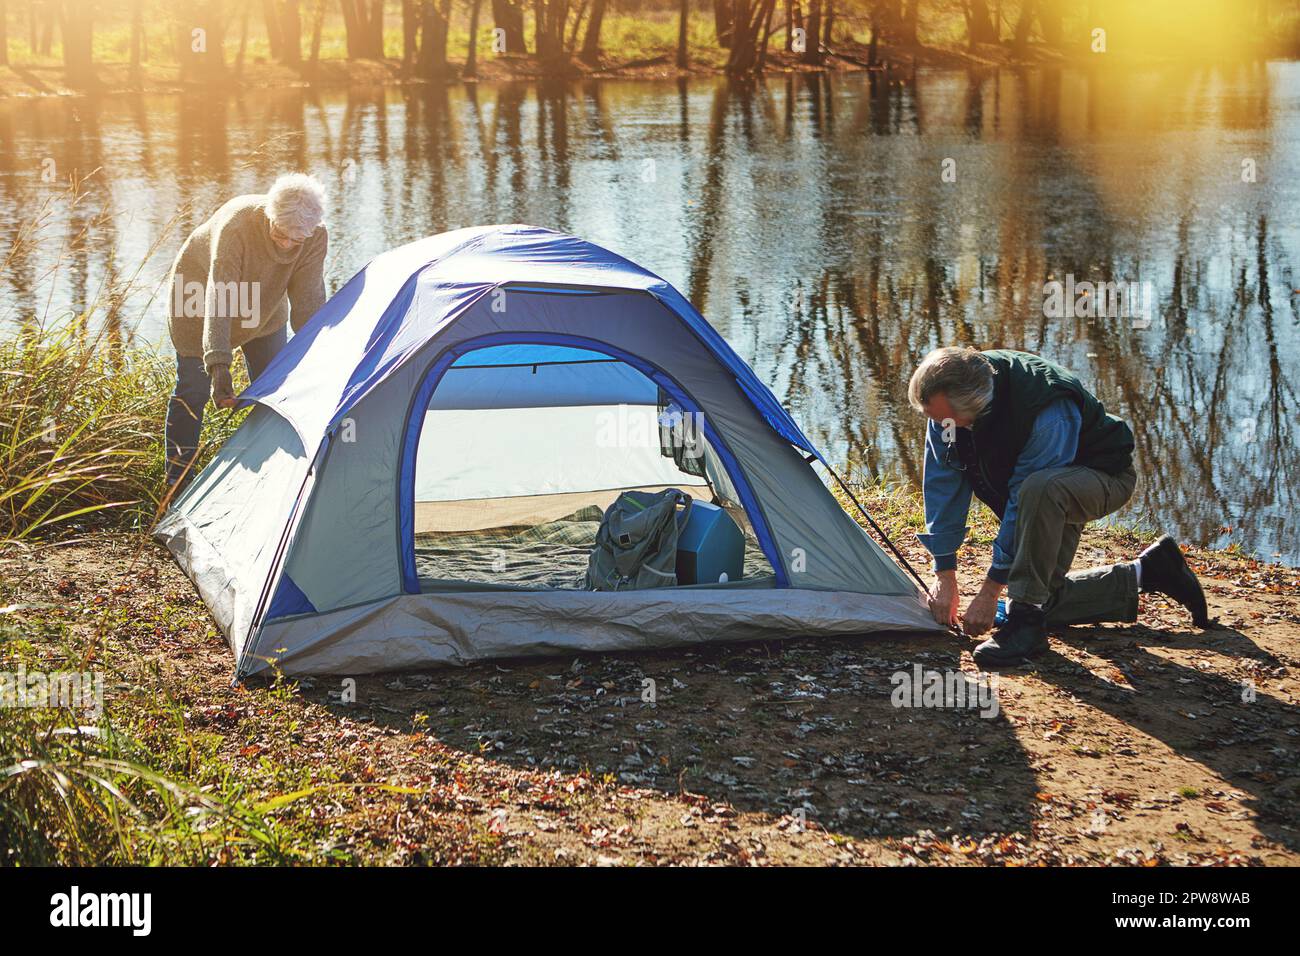 Es ist der perfekte Ort, um ein Camp aufzubauen. Ein Seniorenpaar, das ein Zelt aufbaut, während es in der Wildnis zeltet. Stockfoto